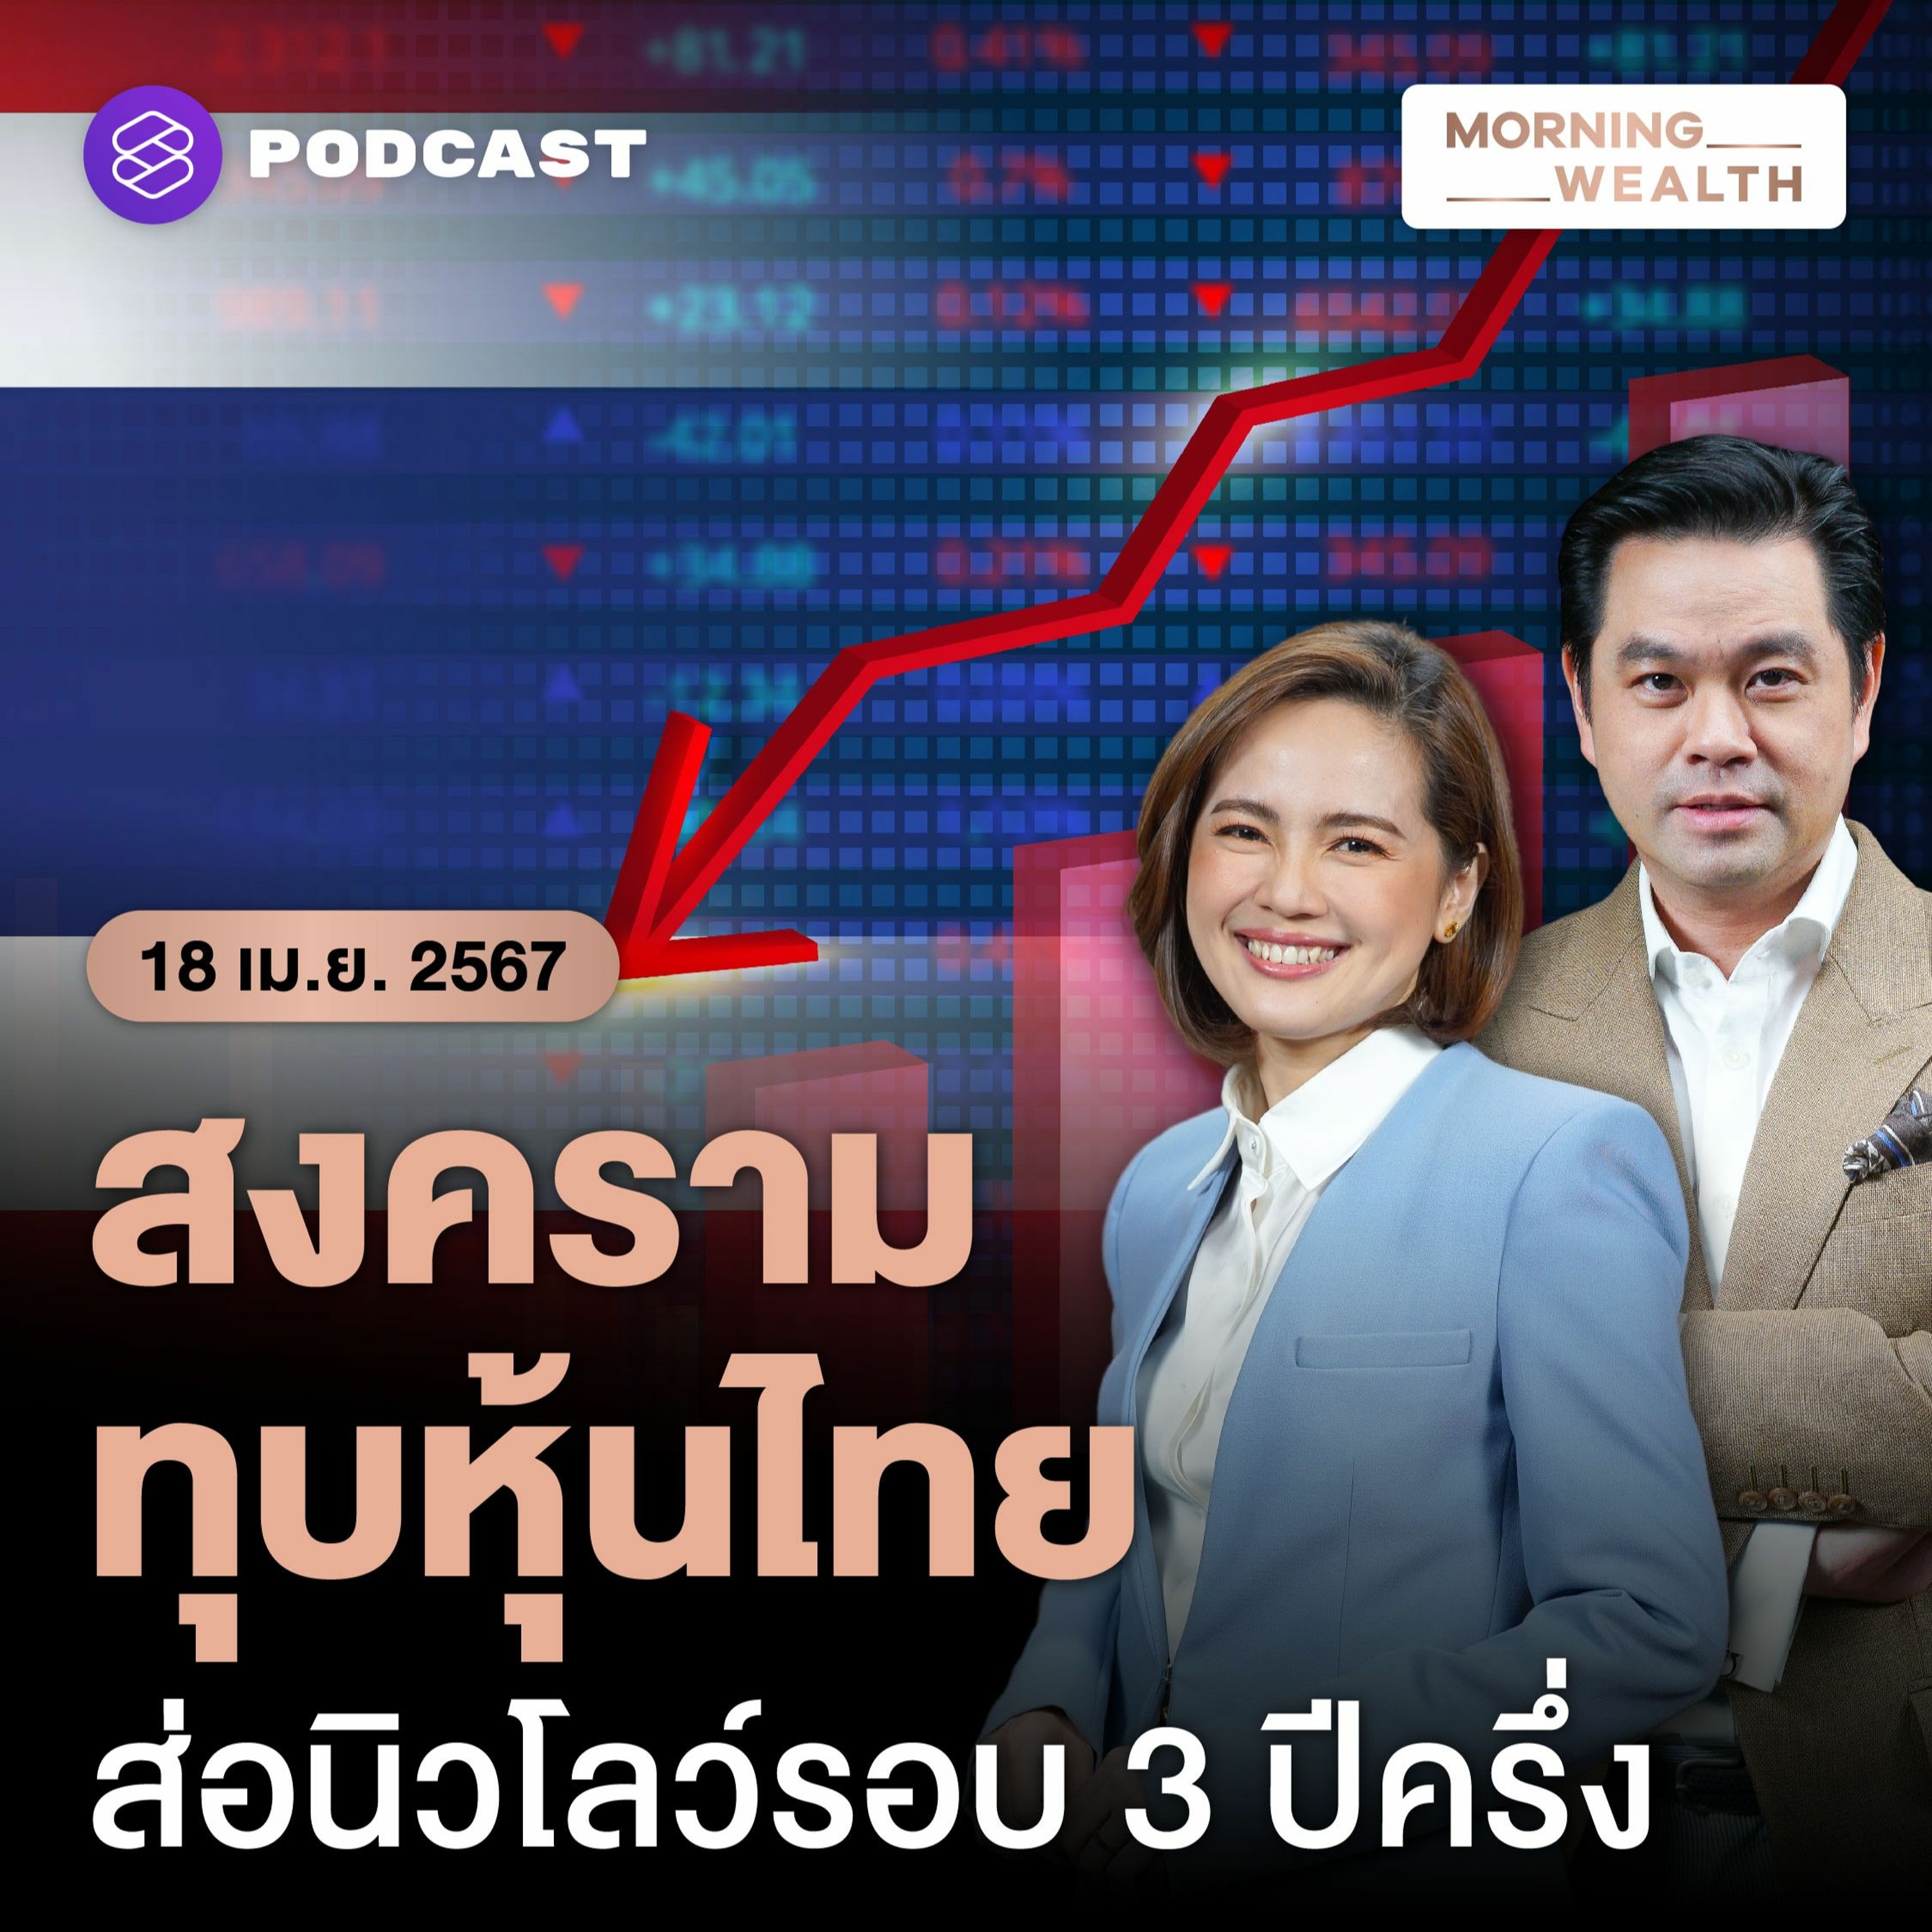 Morning Wealth | ความเสี่ยง ‘สงคราม’ ทุบหุ้นไทย ส่อนิวโลว์รอบ 3 ปีครึ่ง | 18 เมษายน 2567